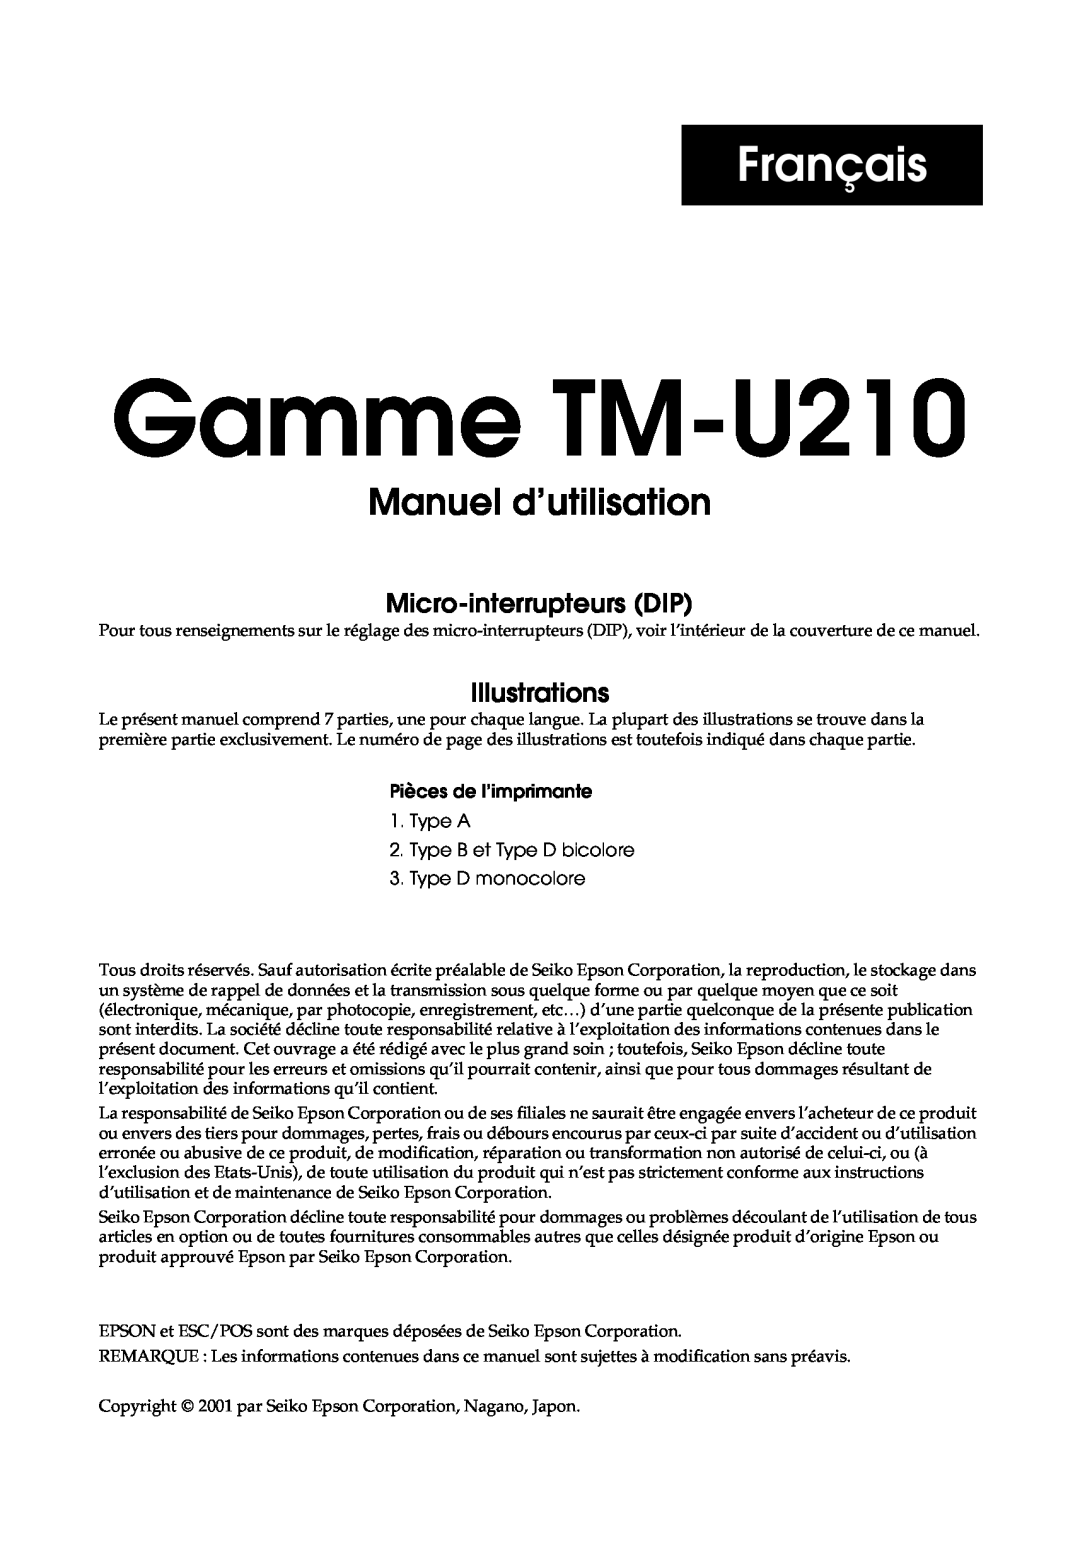 Epson M119D Français, Manuel d’utilisation, Manuel dutilisation de l’imprimante Gamme TM-U210, Micro-interrupteurs DIP 